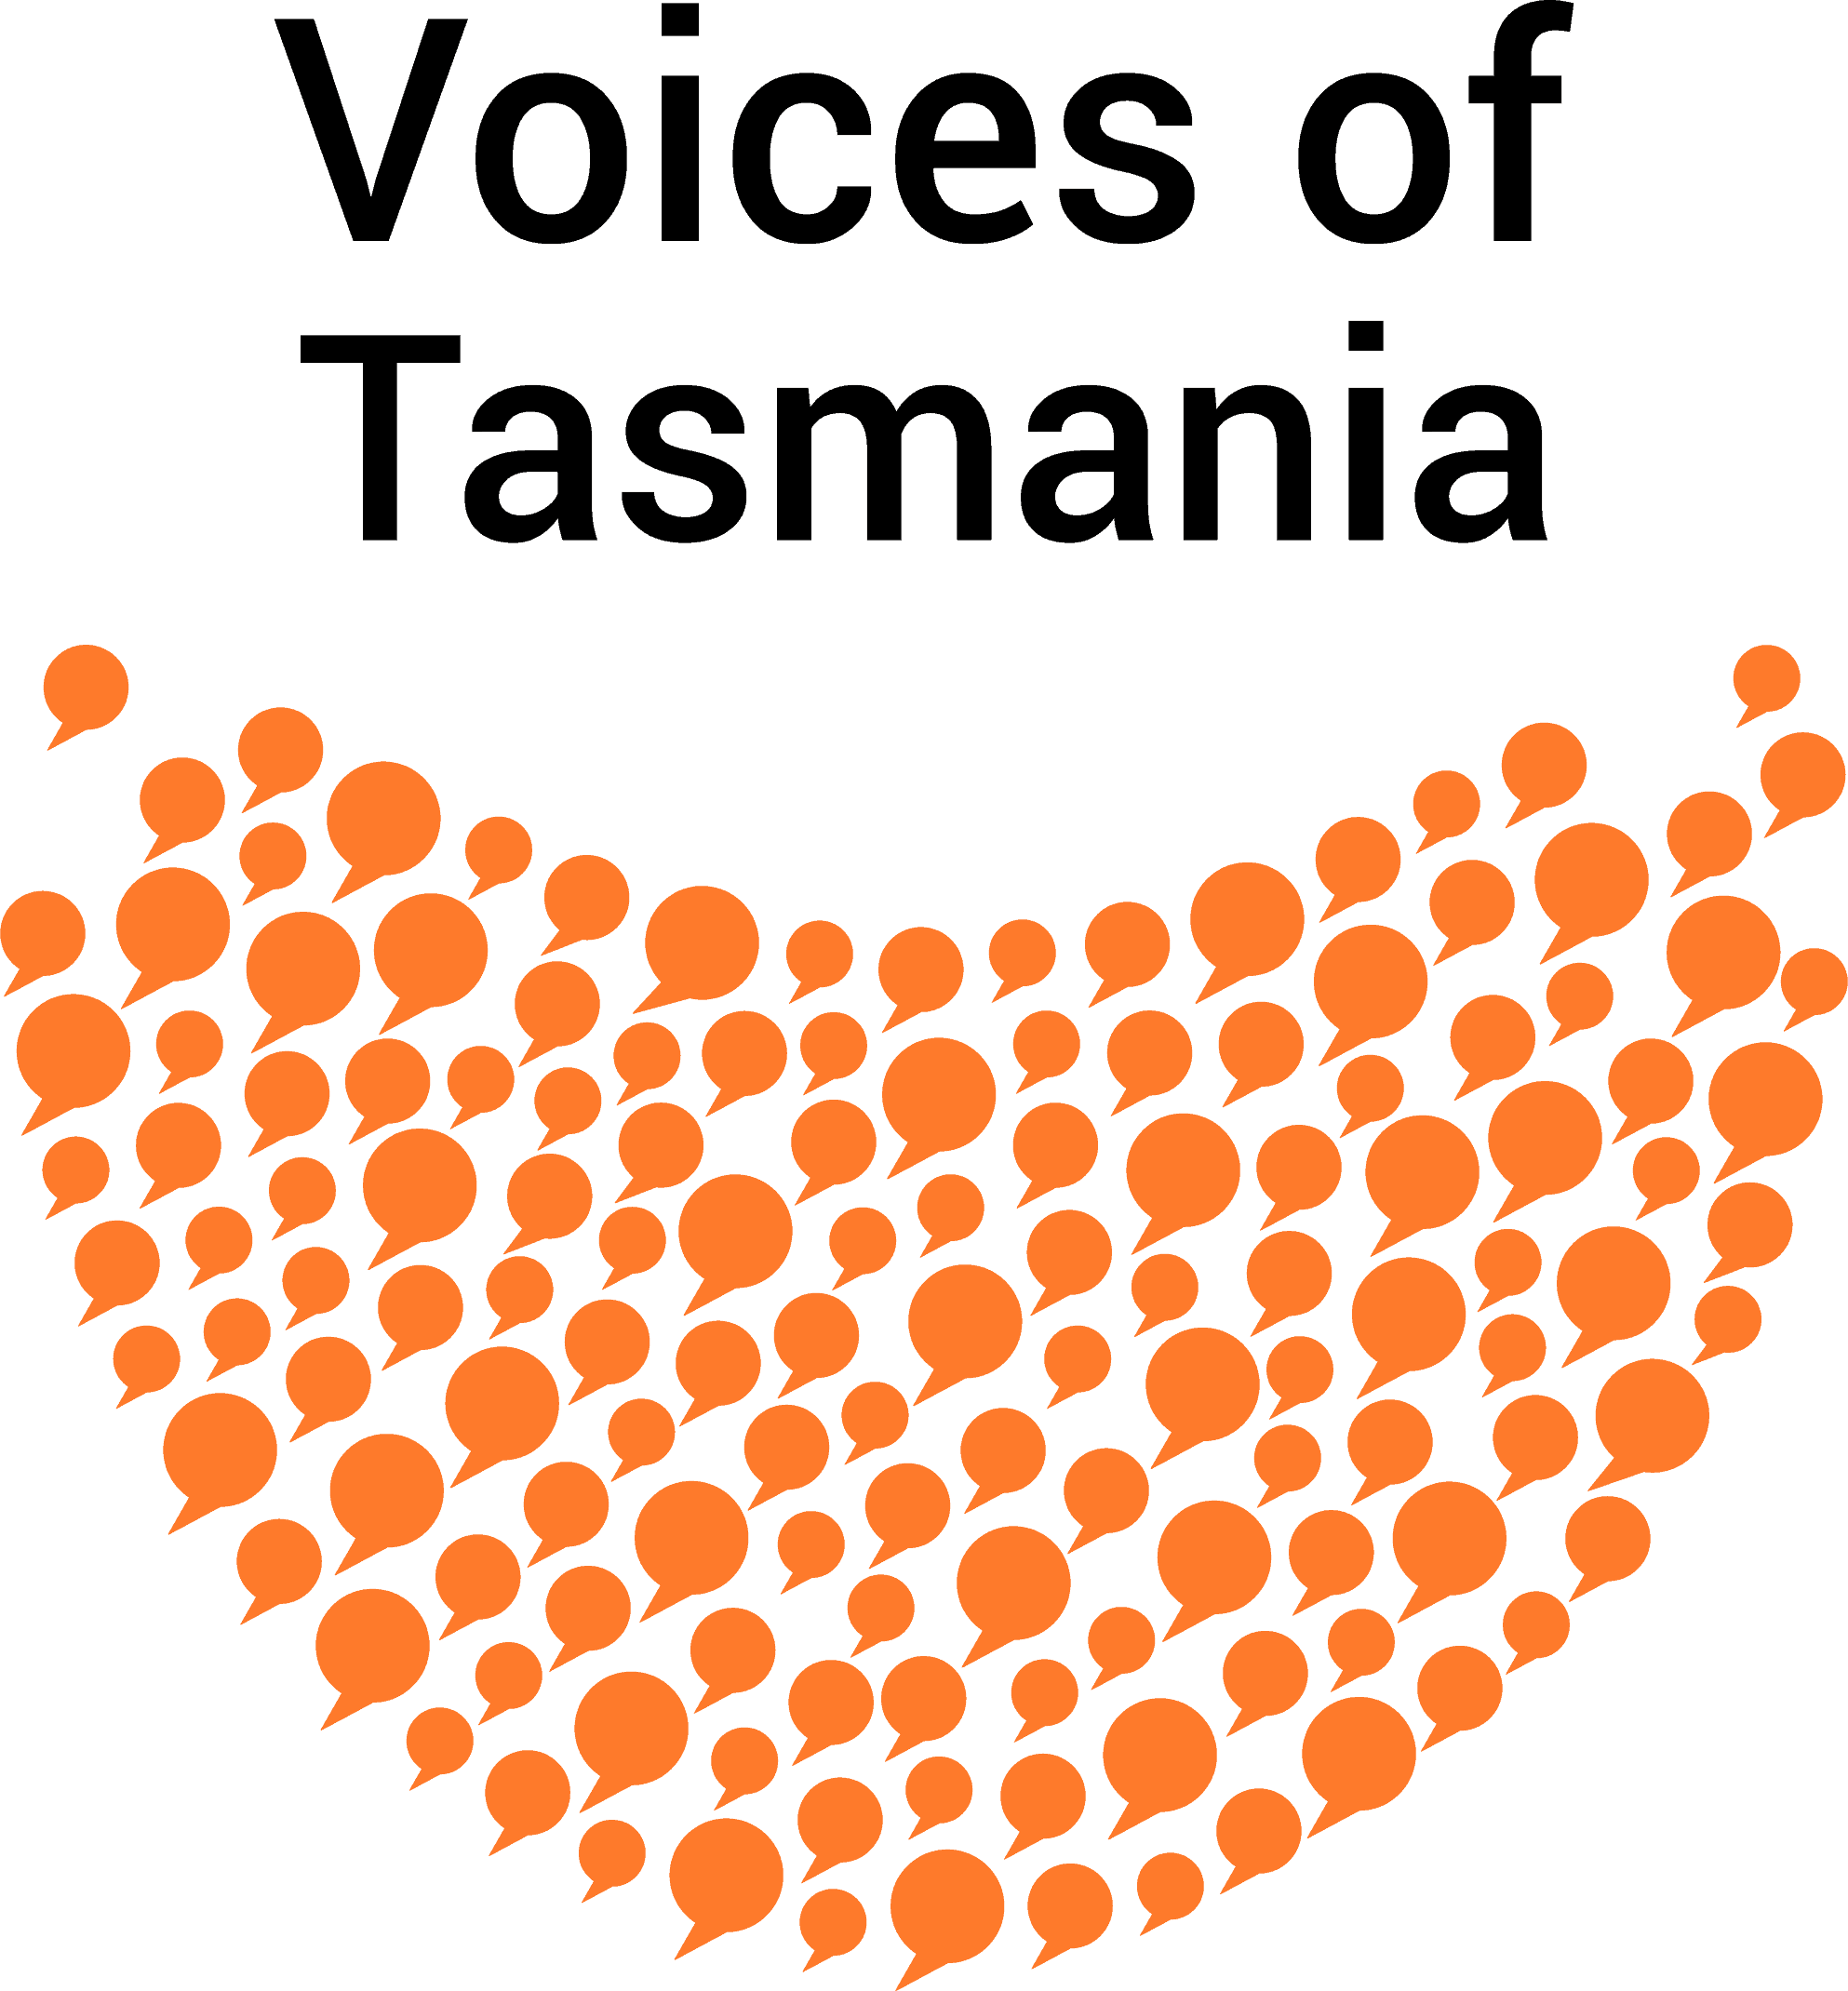 Voices of Tasmania Logo - black text